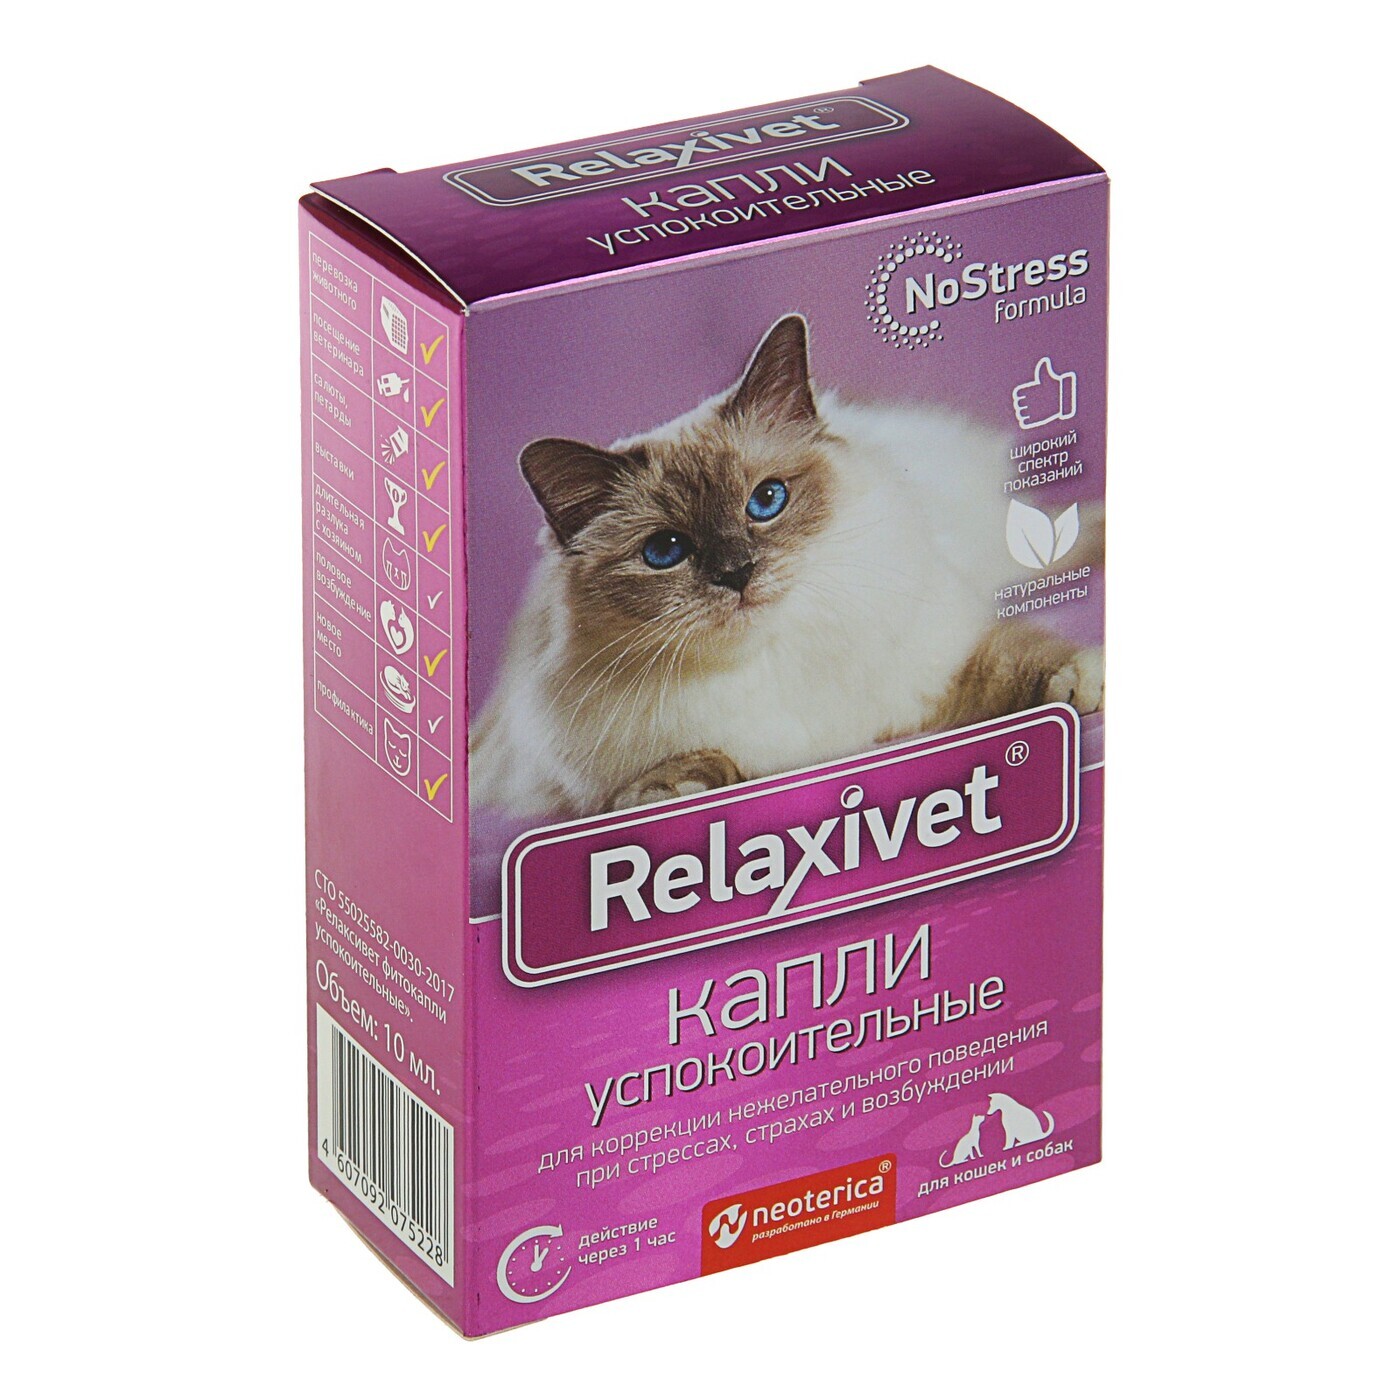 Успокоительное для кошек купить. Relaxivet капли успокоительные. Relaxivet для кошек капли. Капли успокоительные для кошек и собак, 10 мл, Relaxivet. Кошкам успокоительное Relaxivet.